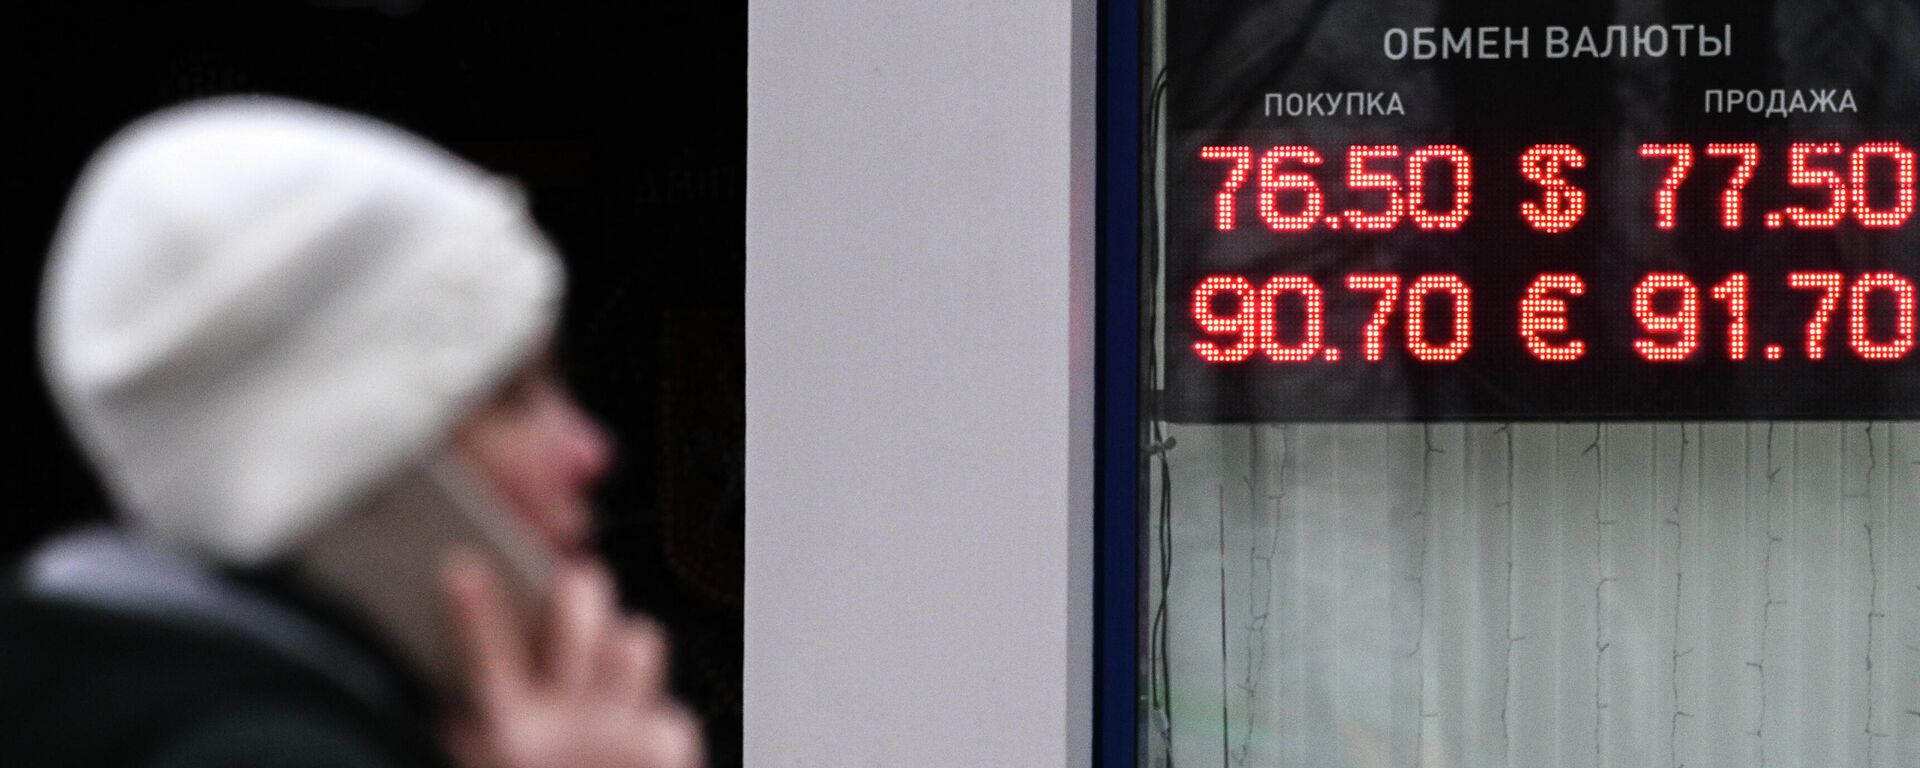 Электронное табло с курсами валют на одной из улиц в Москве. - Sputnik Таджикистан, 1920, 07.12.2021